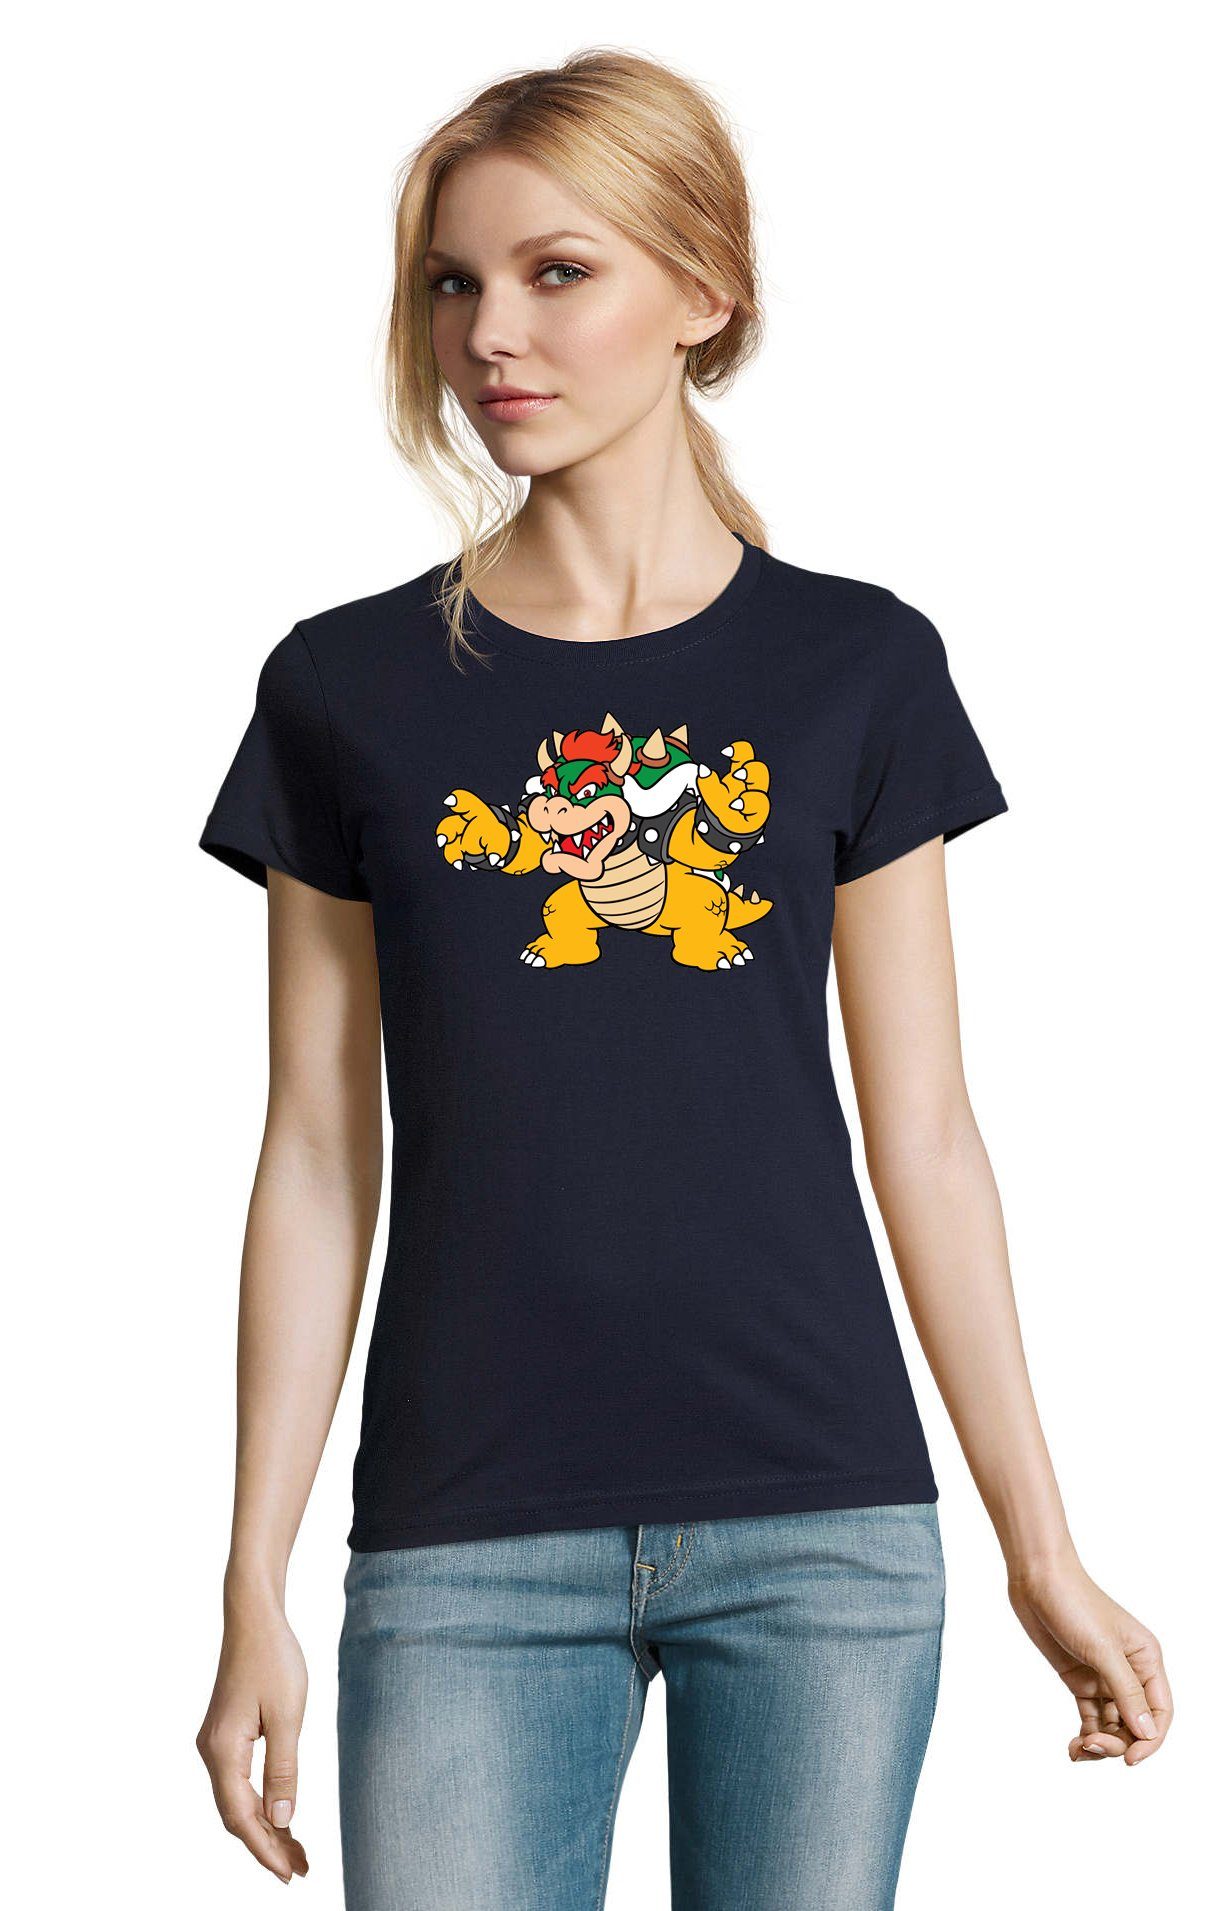 Blondie & Brownie T-Shirt Damen Konsole Nintendo Gaming Navyblau Mario Bowser Game Yoshi Gamer Luigi